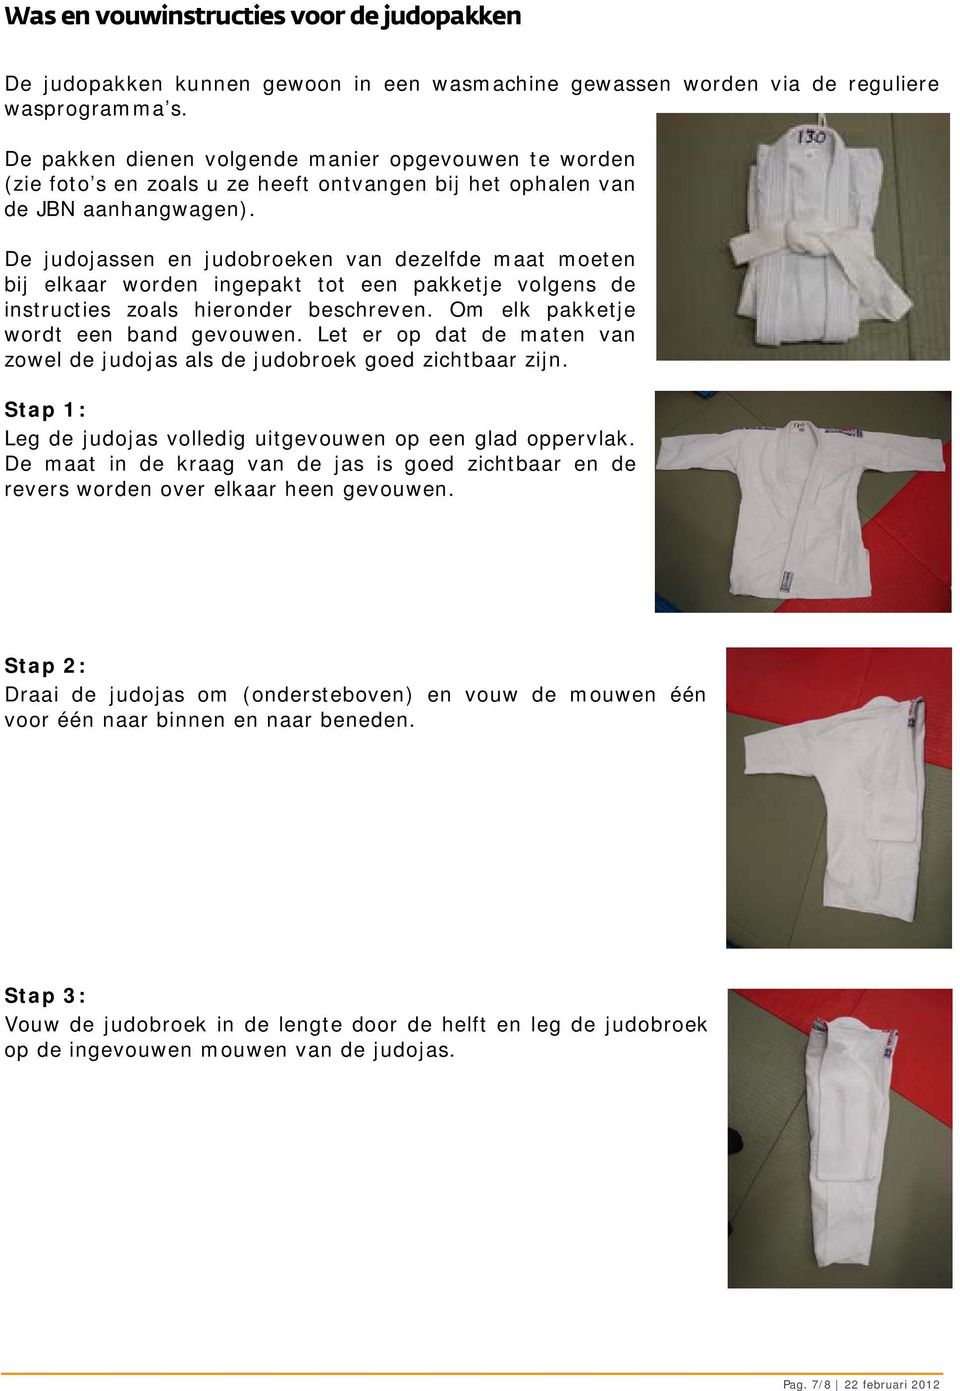 De judojassen en judobroeken van dezelfde maat moeten bij elkaar worden ingepakt tot een pakketje volgens de instructies zoals hieronder beschreven. Om elk pakketje wordt een band gevouwen.